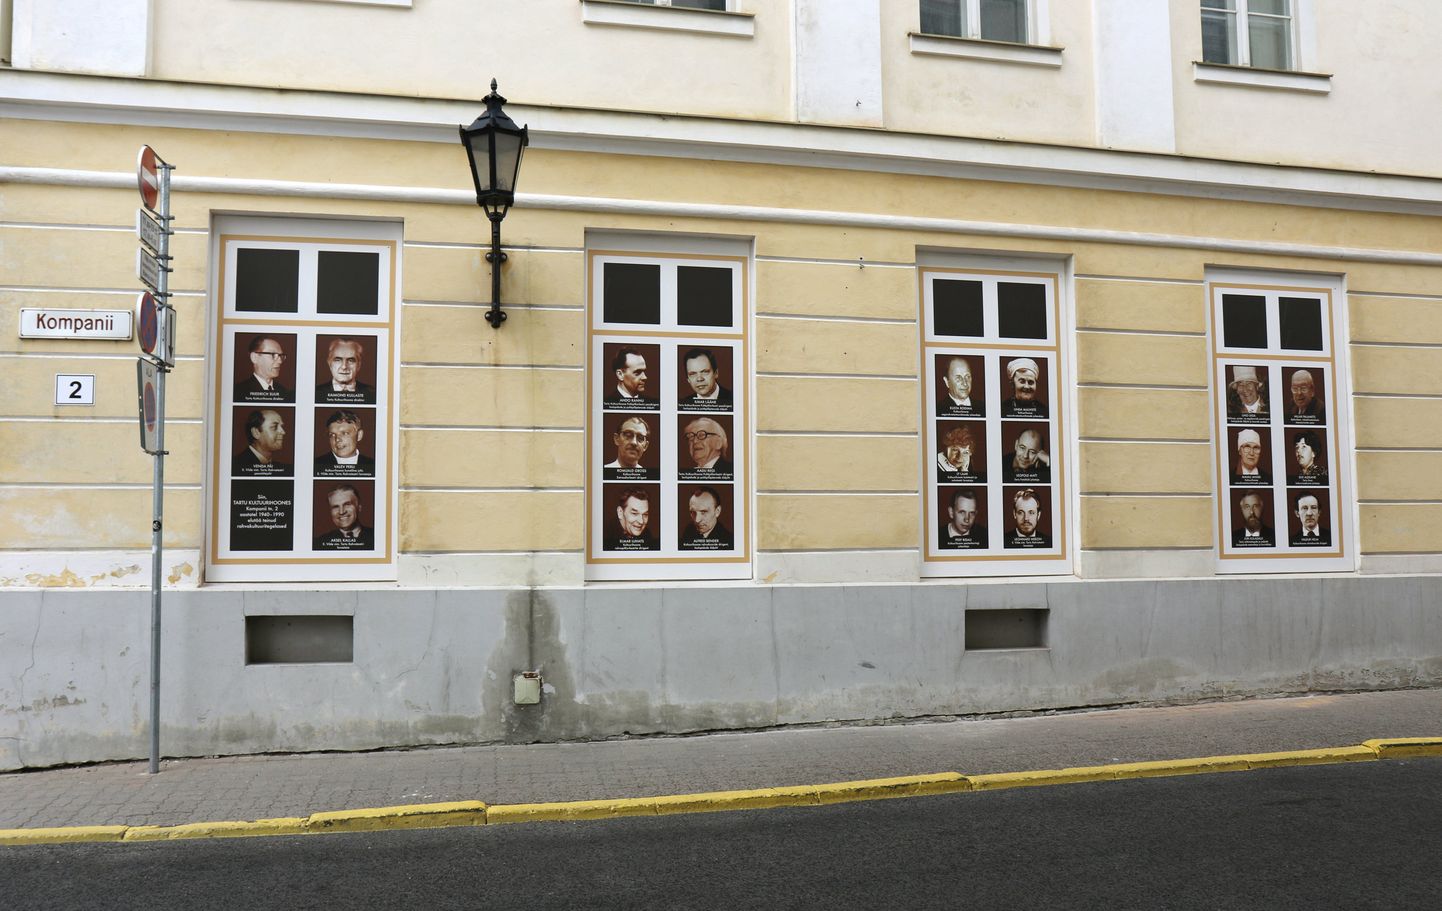 Kunagise Tartu kultuurihoone seinal avati 31. juulil fotoaknad, et meenutada sealses majas tegutsenud rahvakultuuri edendajaid.